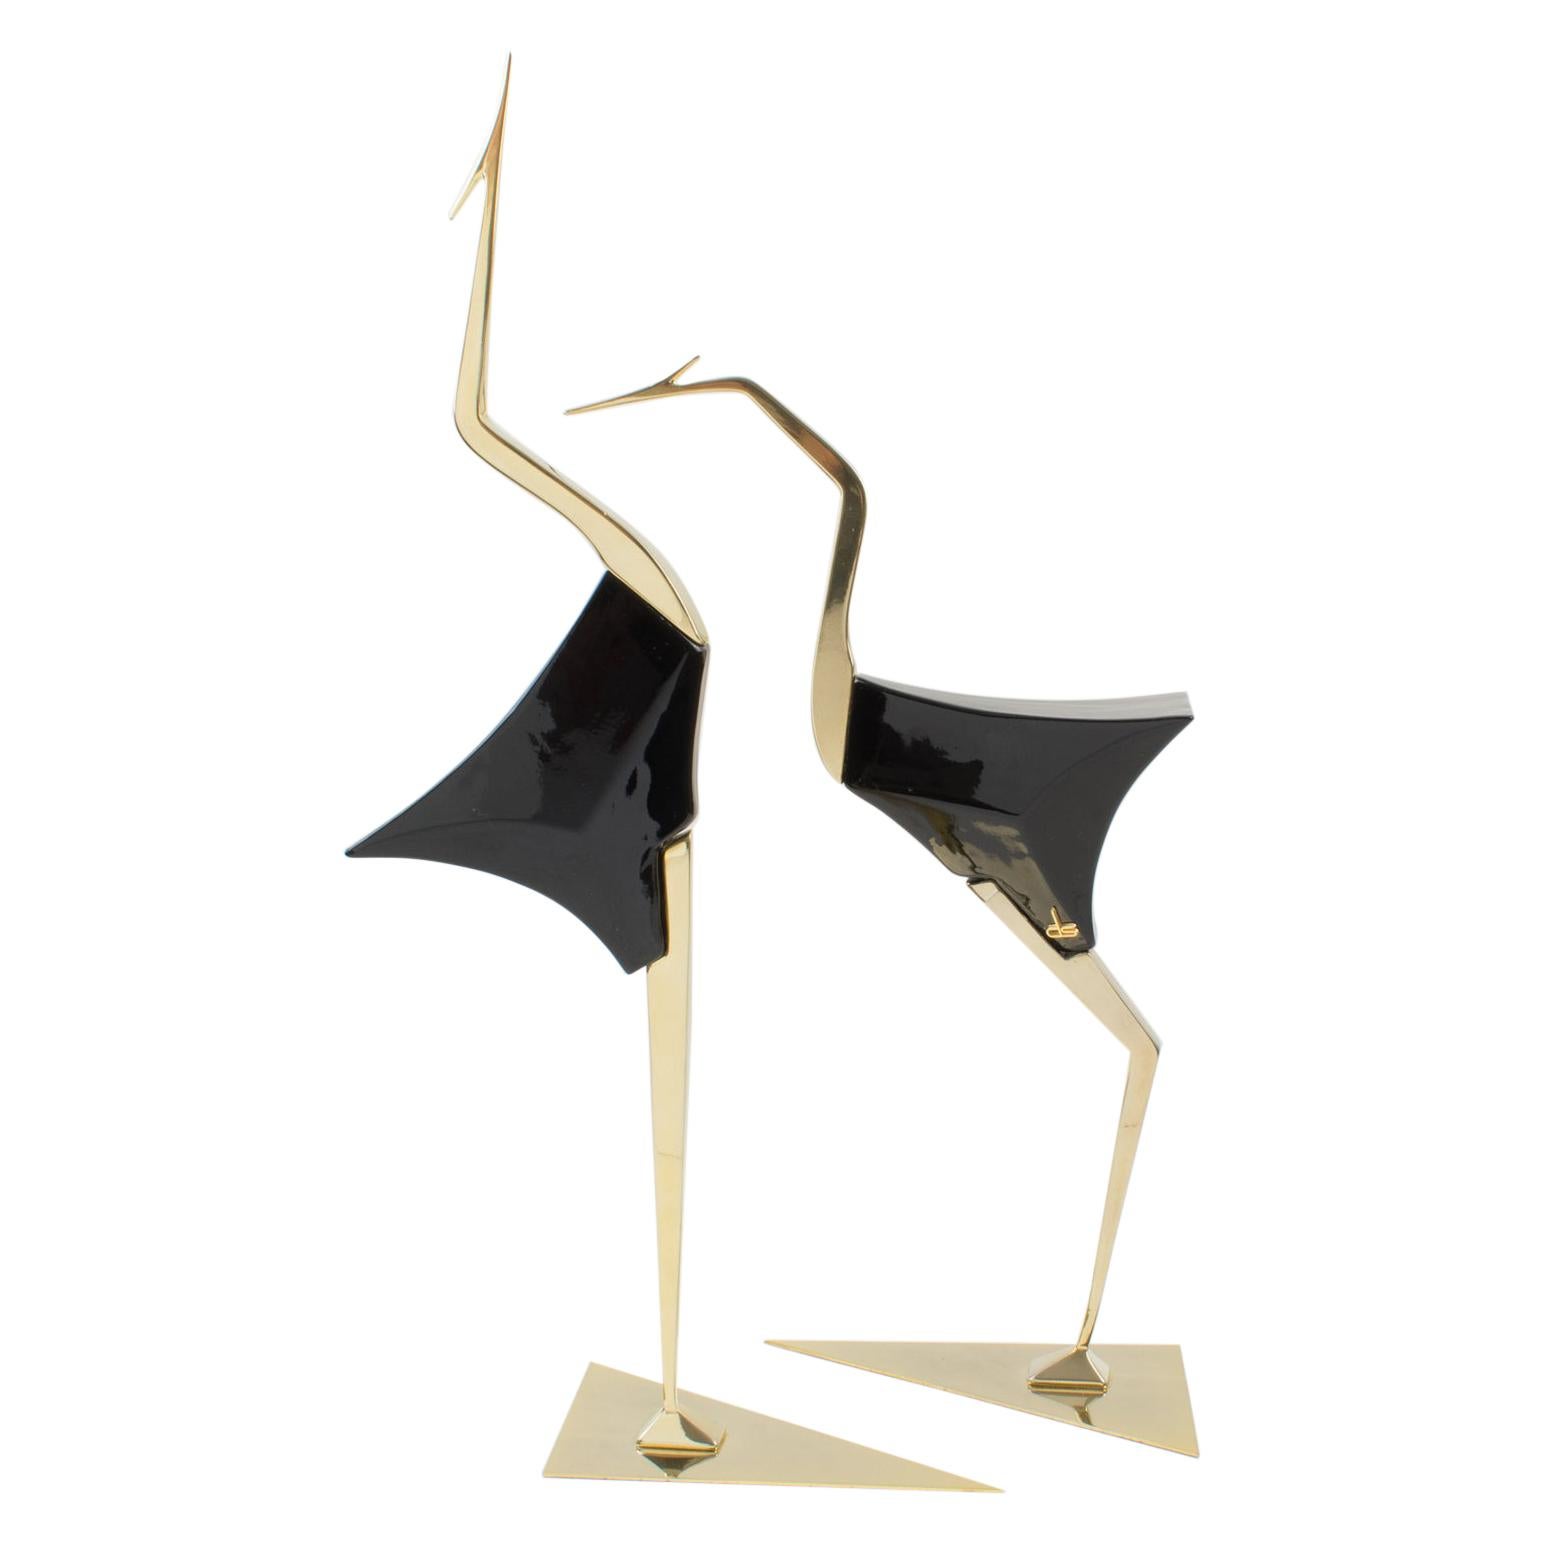 De Stijl Firenze Italy 1970s Giant Wood and Brass Bird Sculpture, a pair